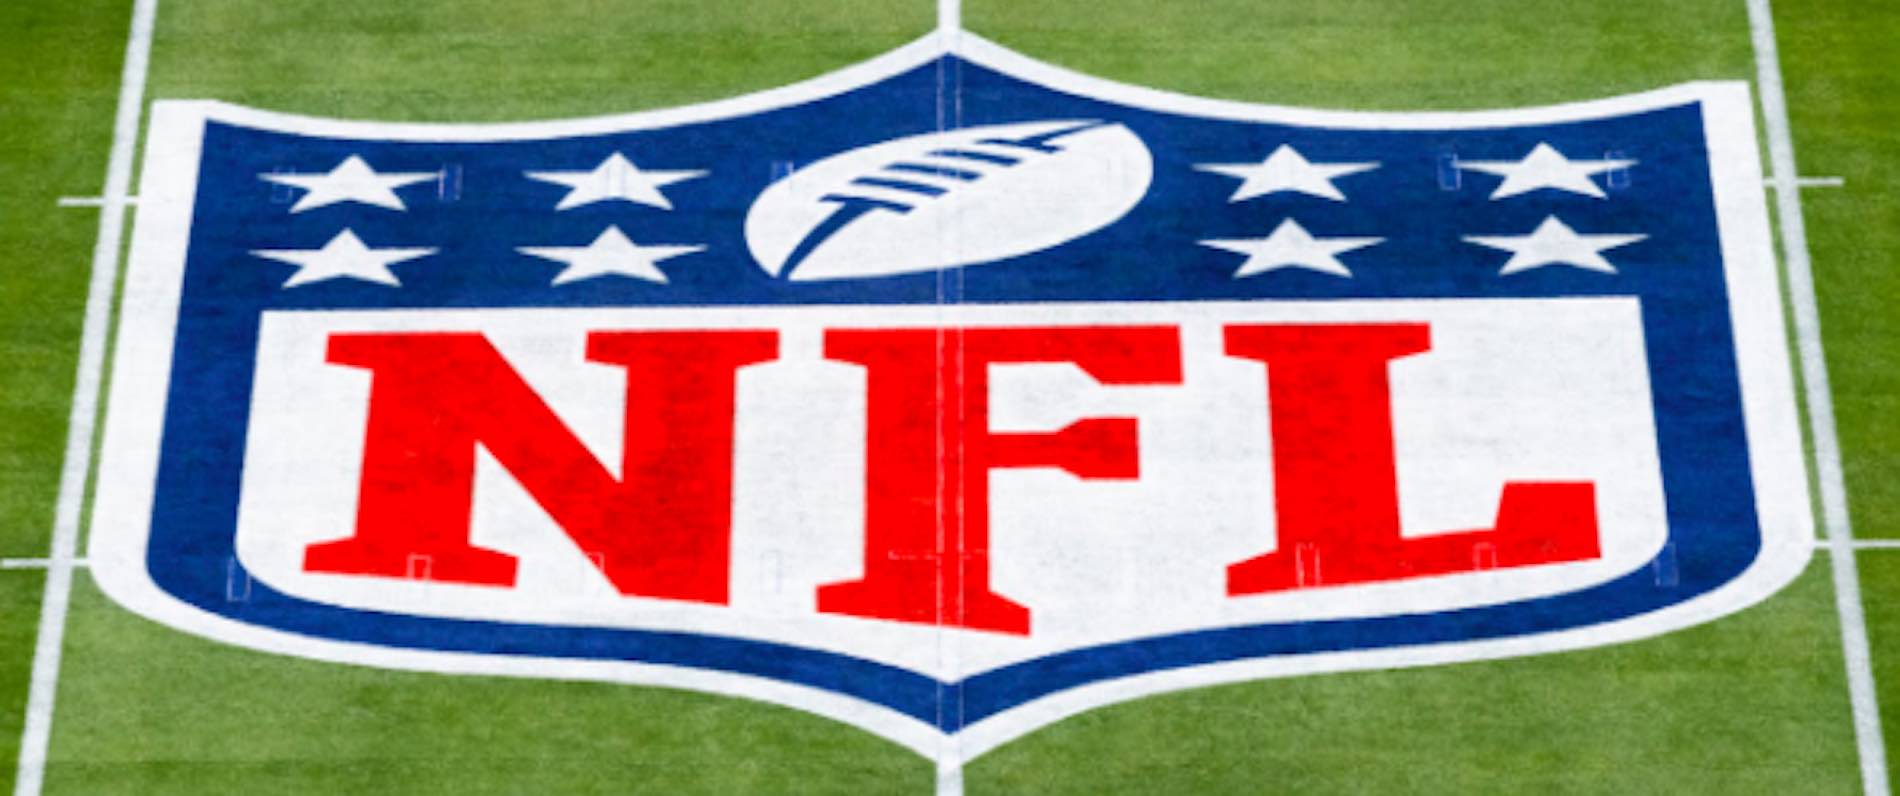 NFL Logo On Pitch